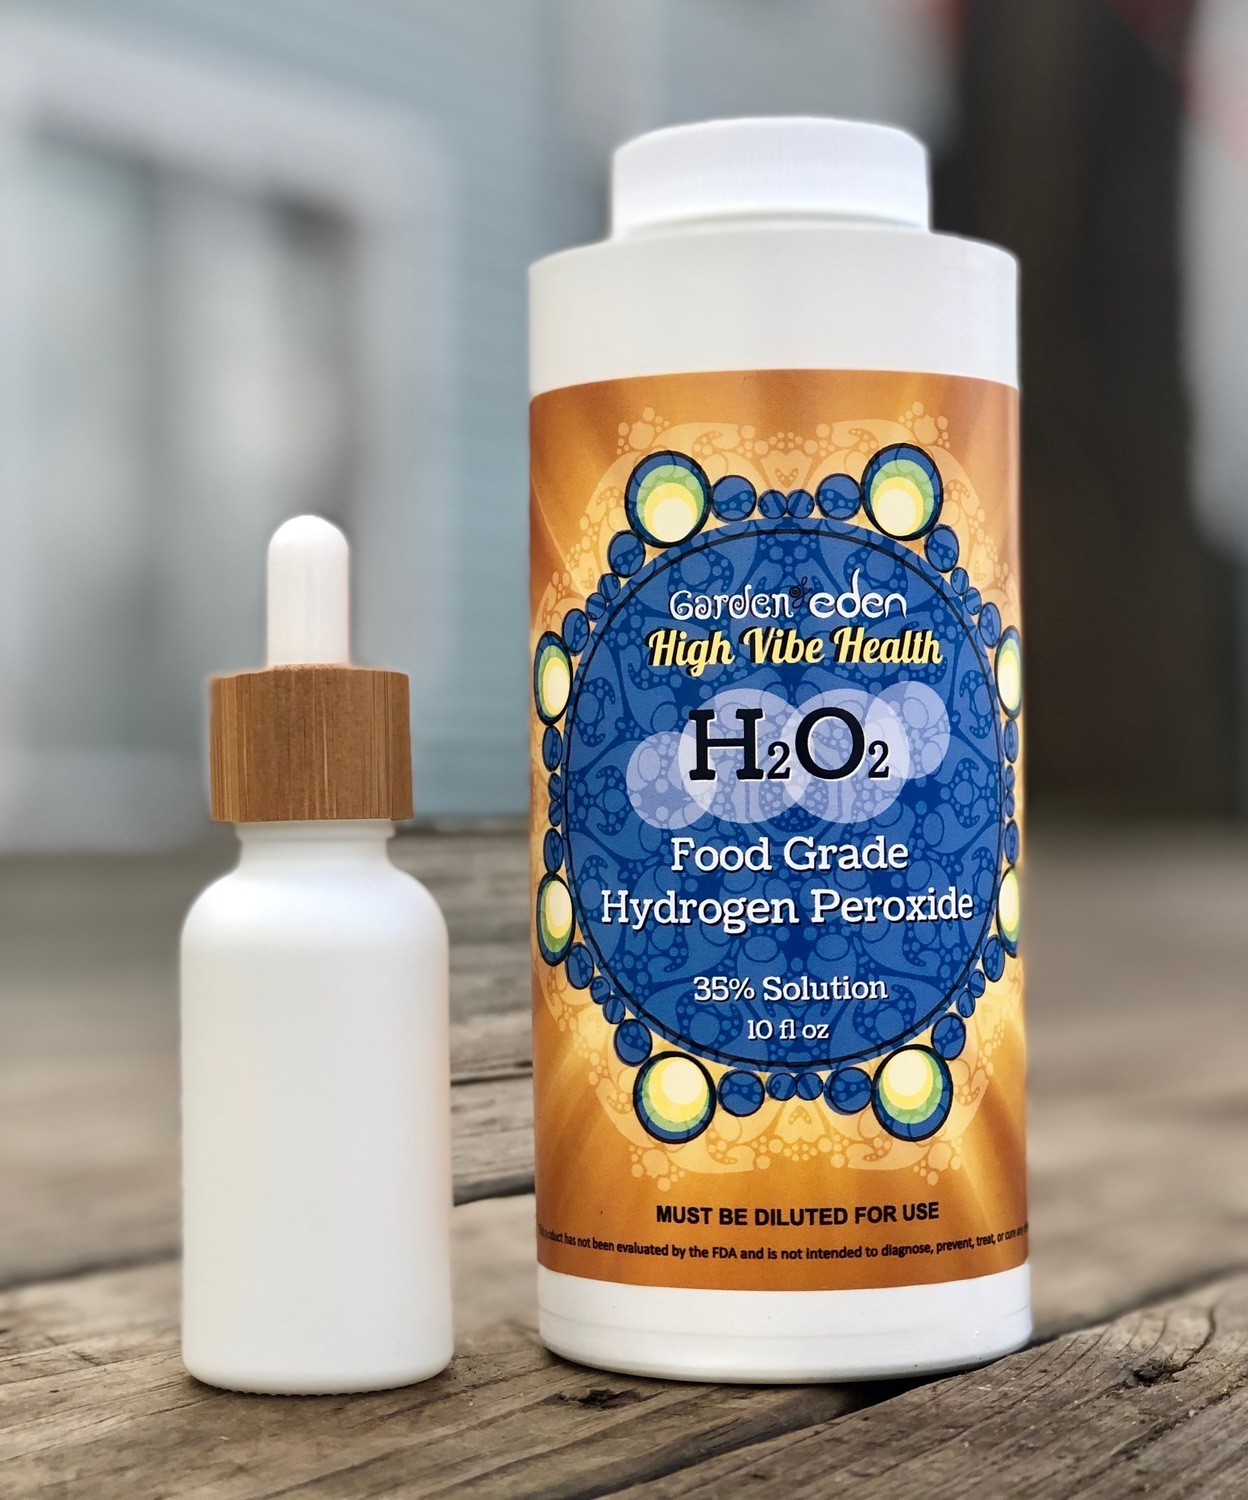 35 hydrogen peroxide